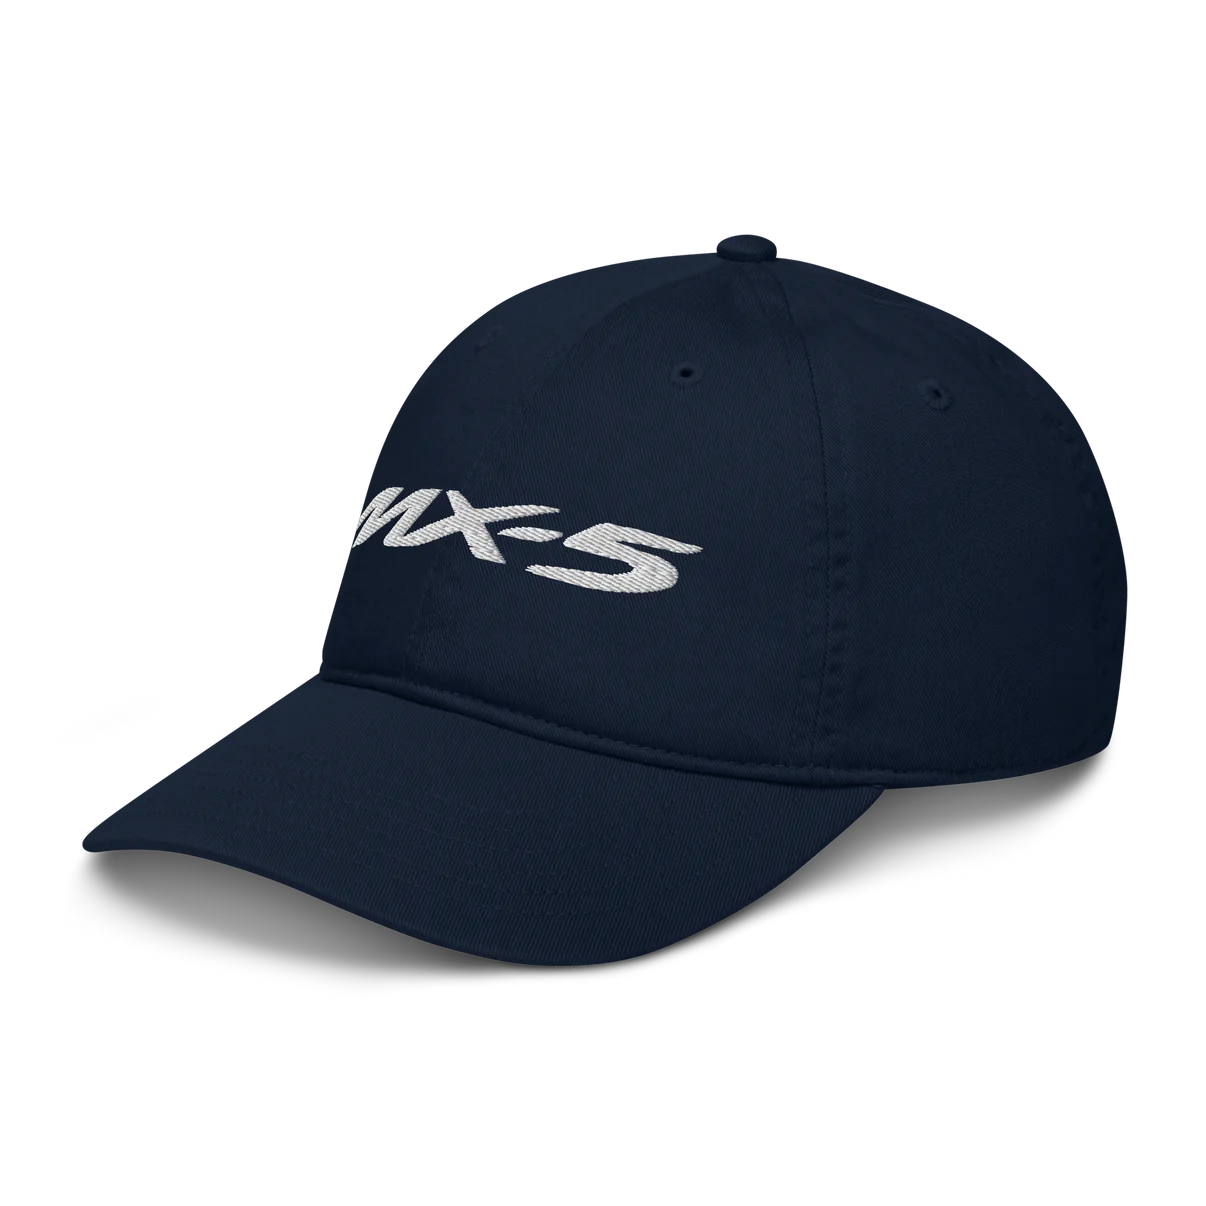 MX-5 Hats